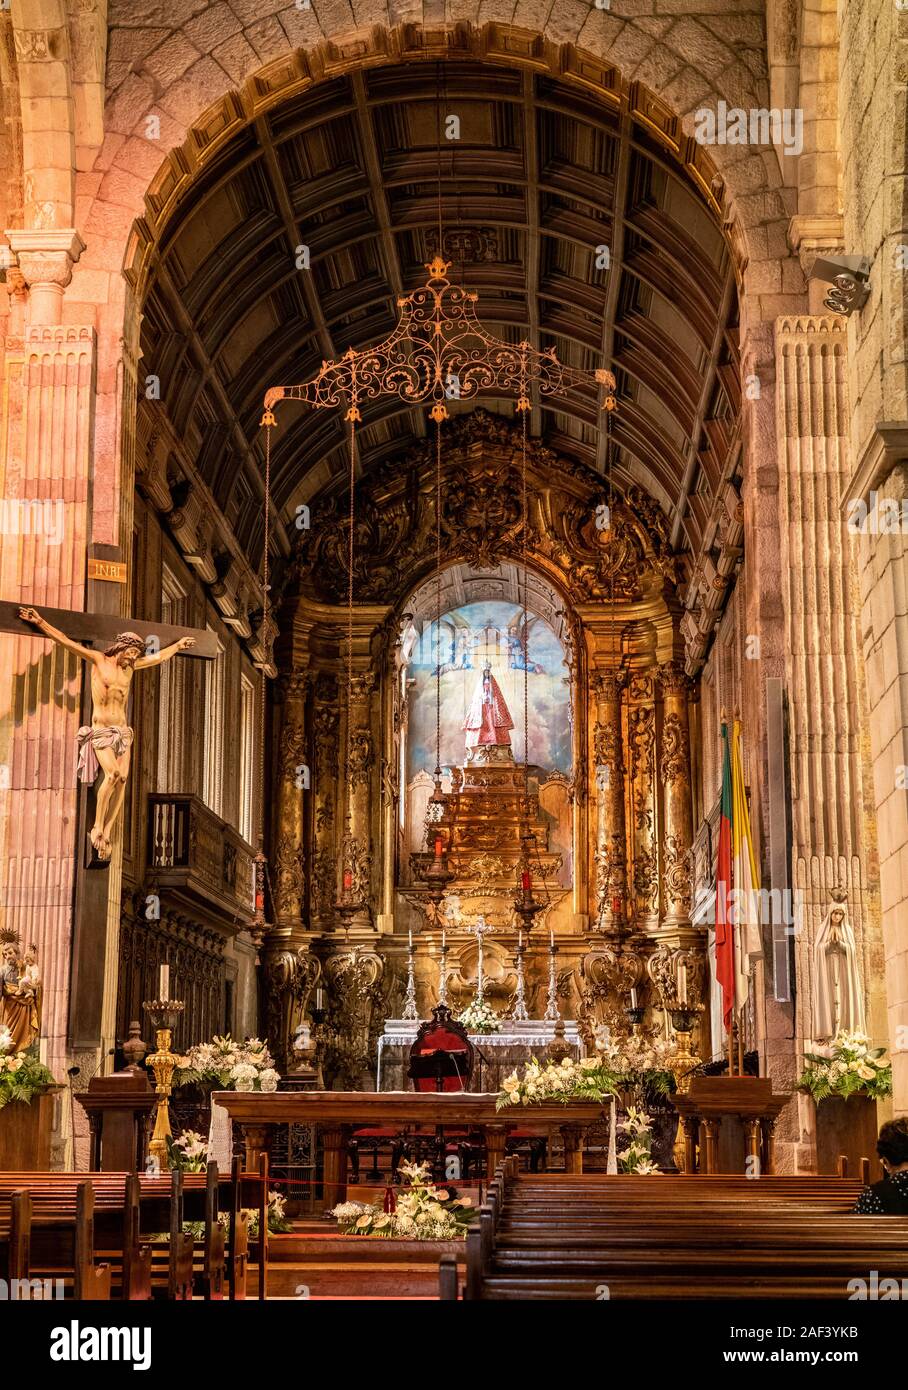 Guimaraes, Portugal - 18 de agosto de 2019: Interior y el altar de la Igreja de Nossa Senhora da Oliveira Foto de stock